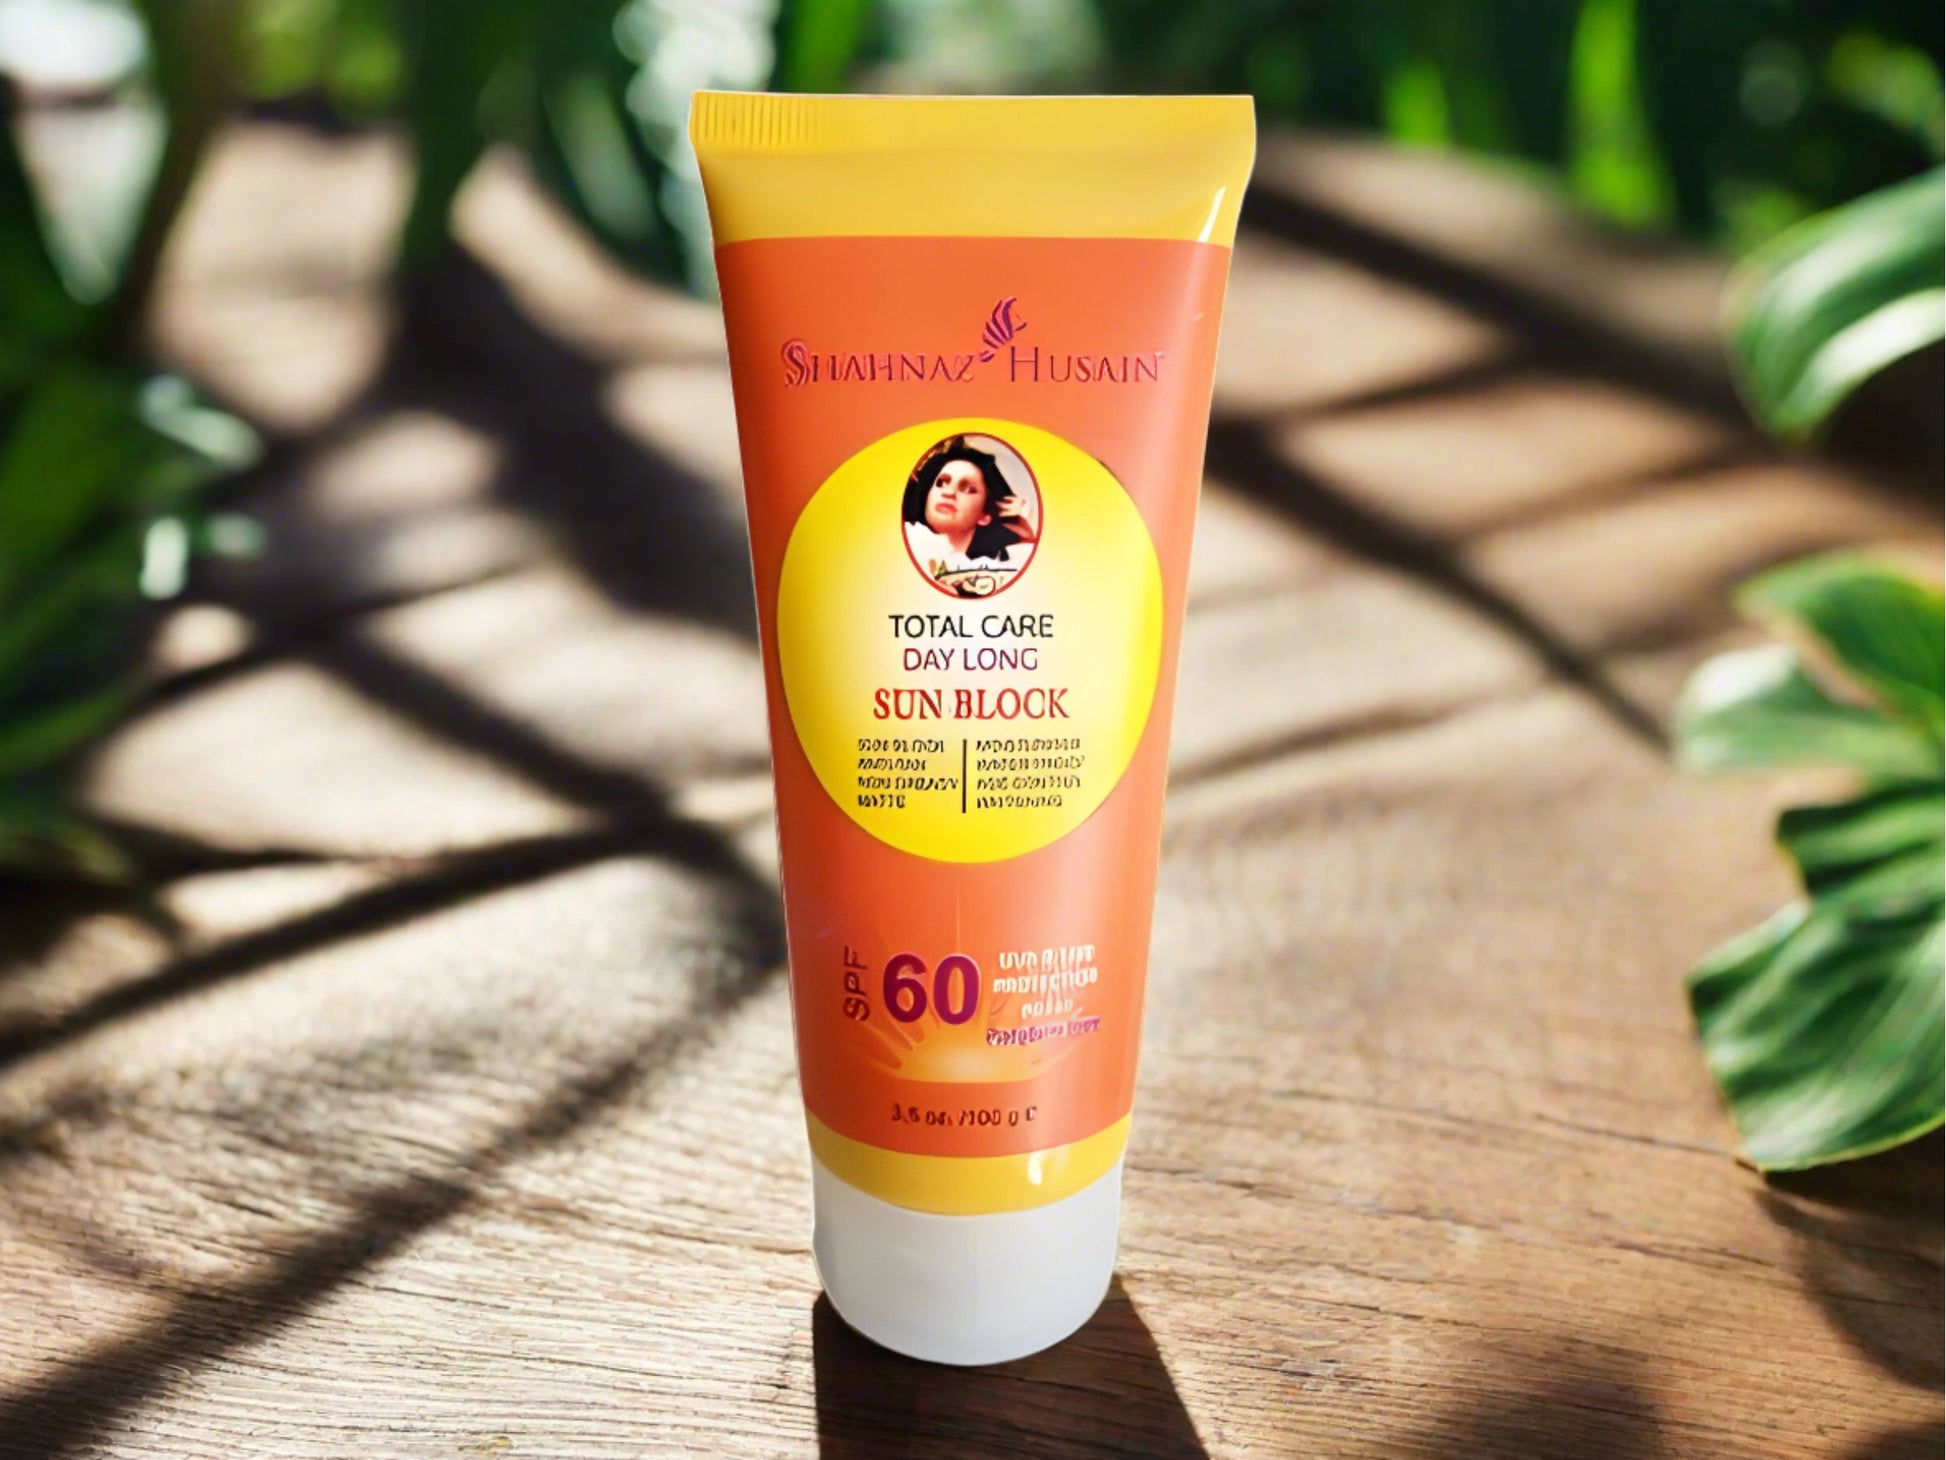 alt="Shahnaz Husain Sun block Sunscreen cream"